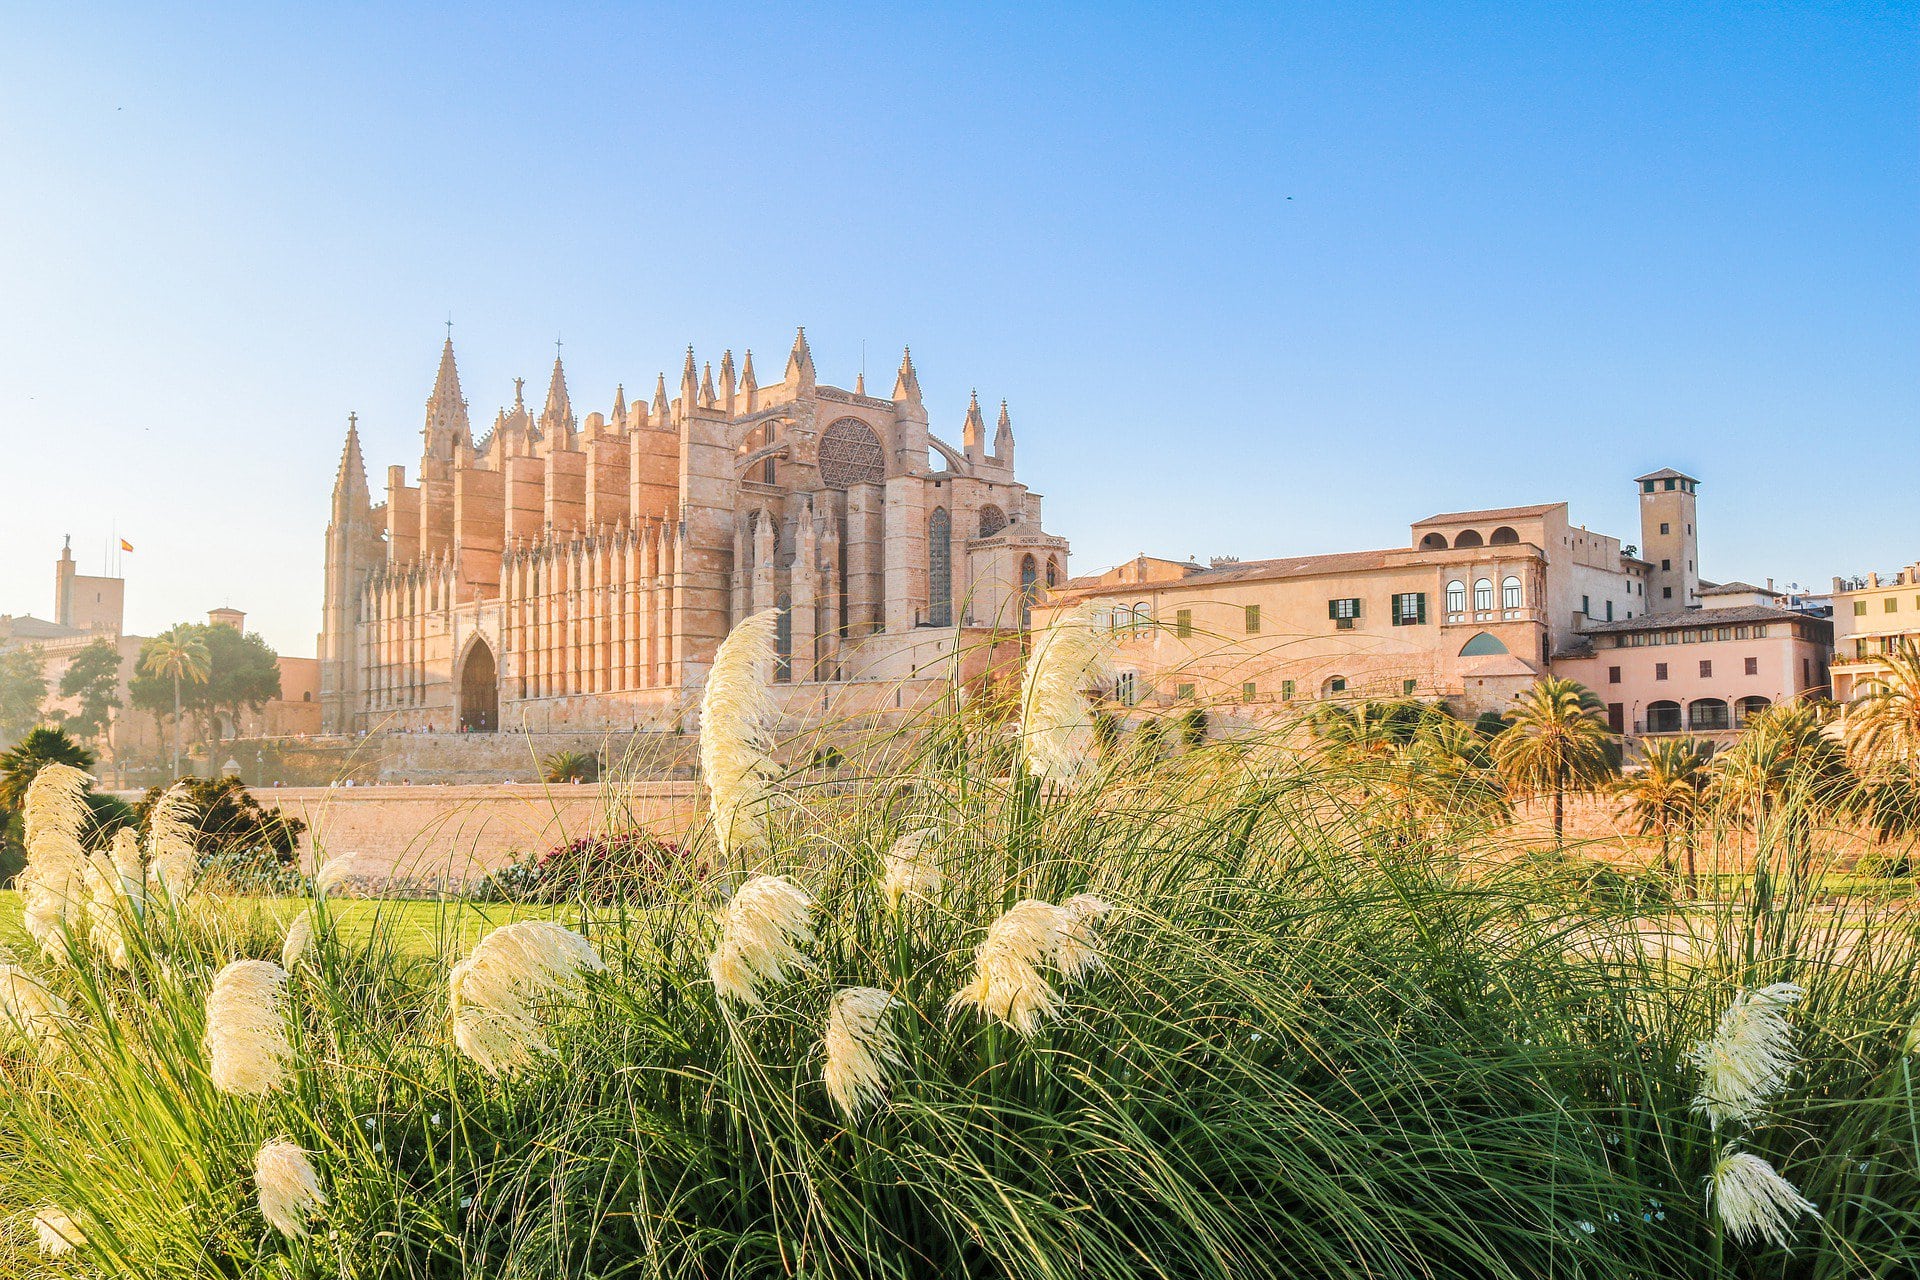 Die Kathedrale von Palma ist berühmt für ihre gotische Fensterrose, die größte dieses Stils und eine wahre Augenweide